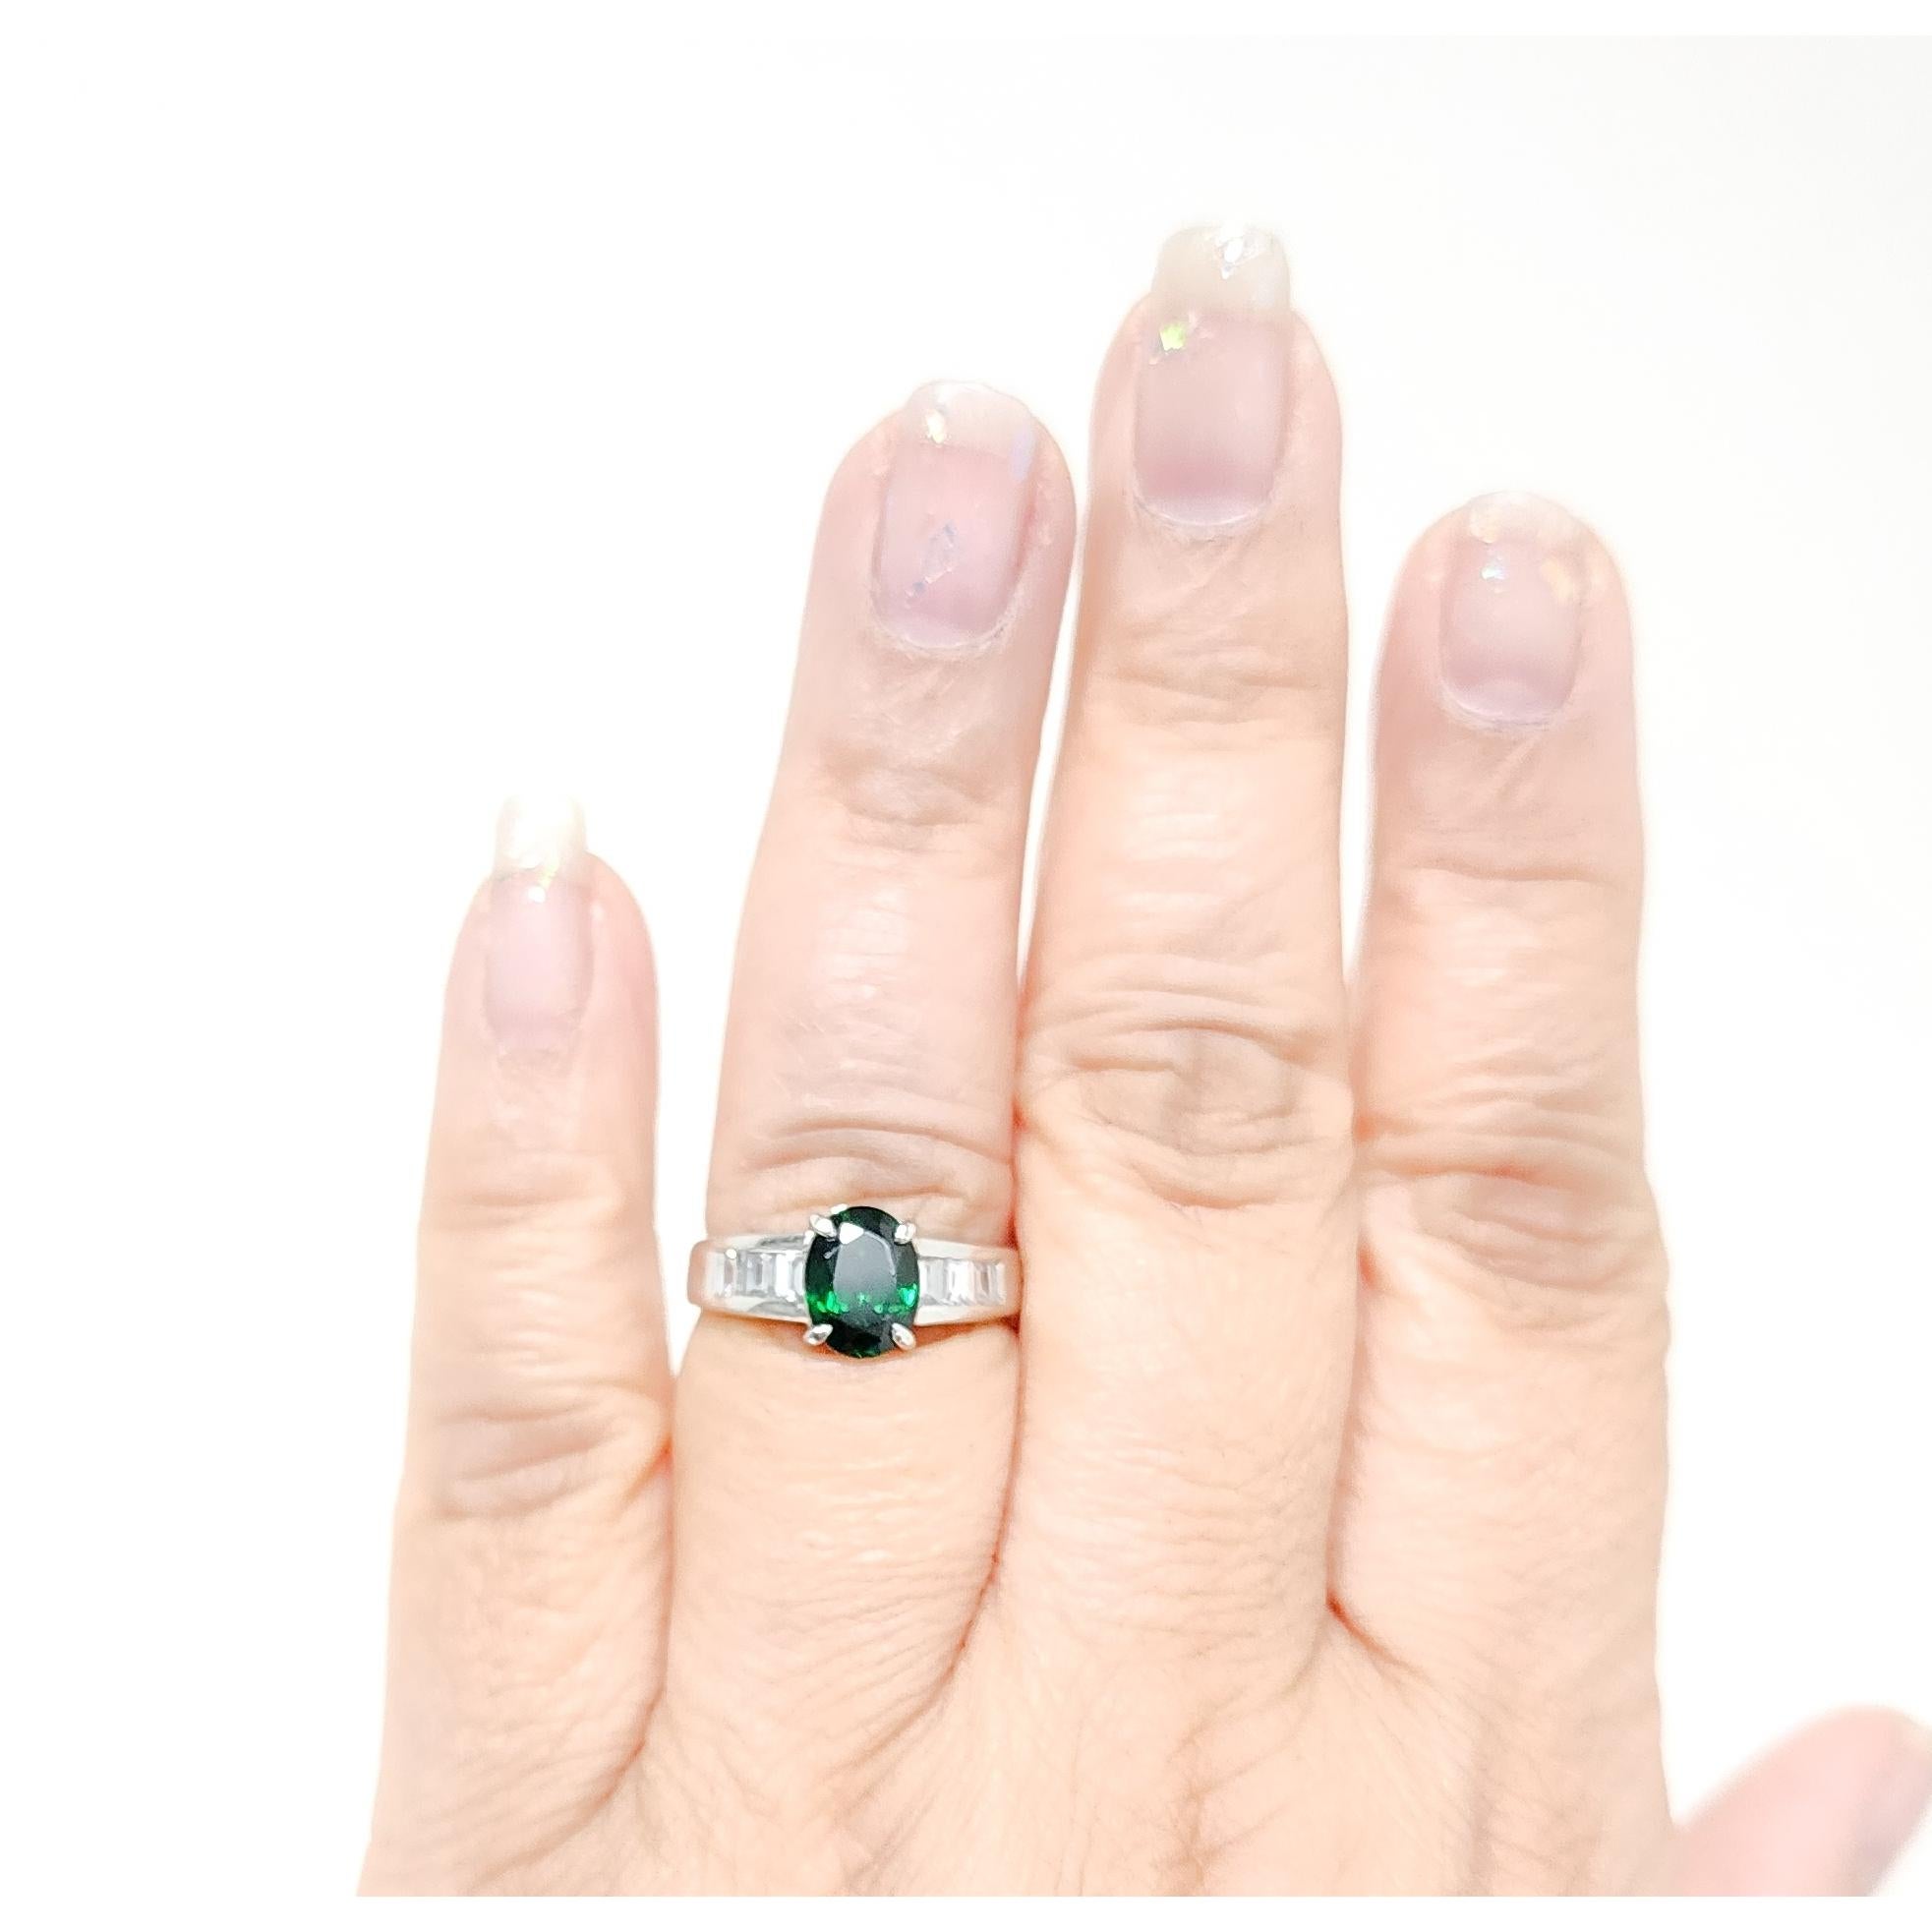 Magnifique ovale de 2,01 ct. de grenat tsavorite vert brillant avec 0,55 ct. de baguettes de diamant blanc de bonne qualité.  Fait à la main en platine.  Bague taille 7.5.